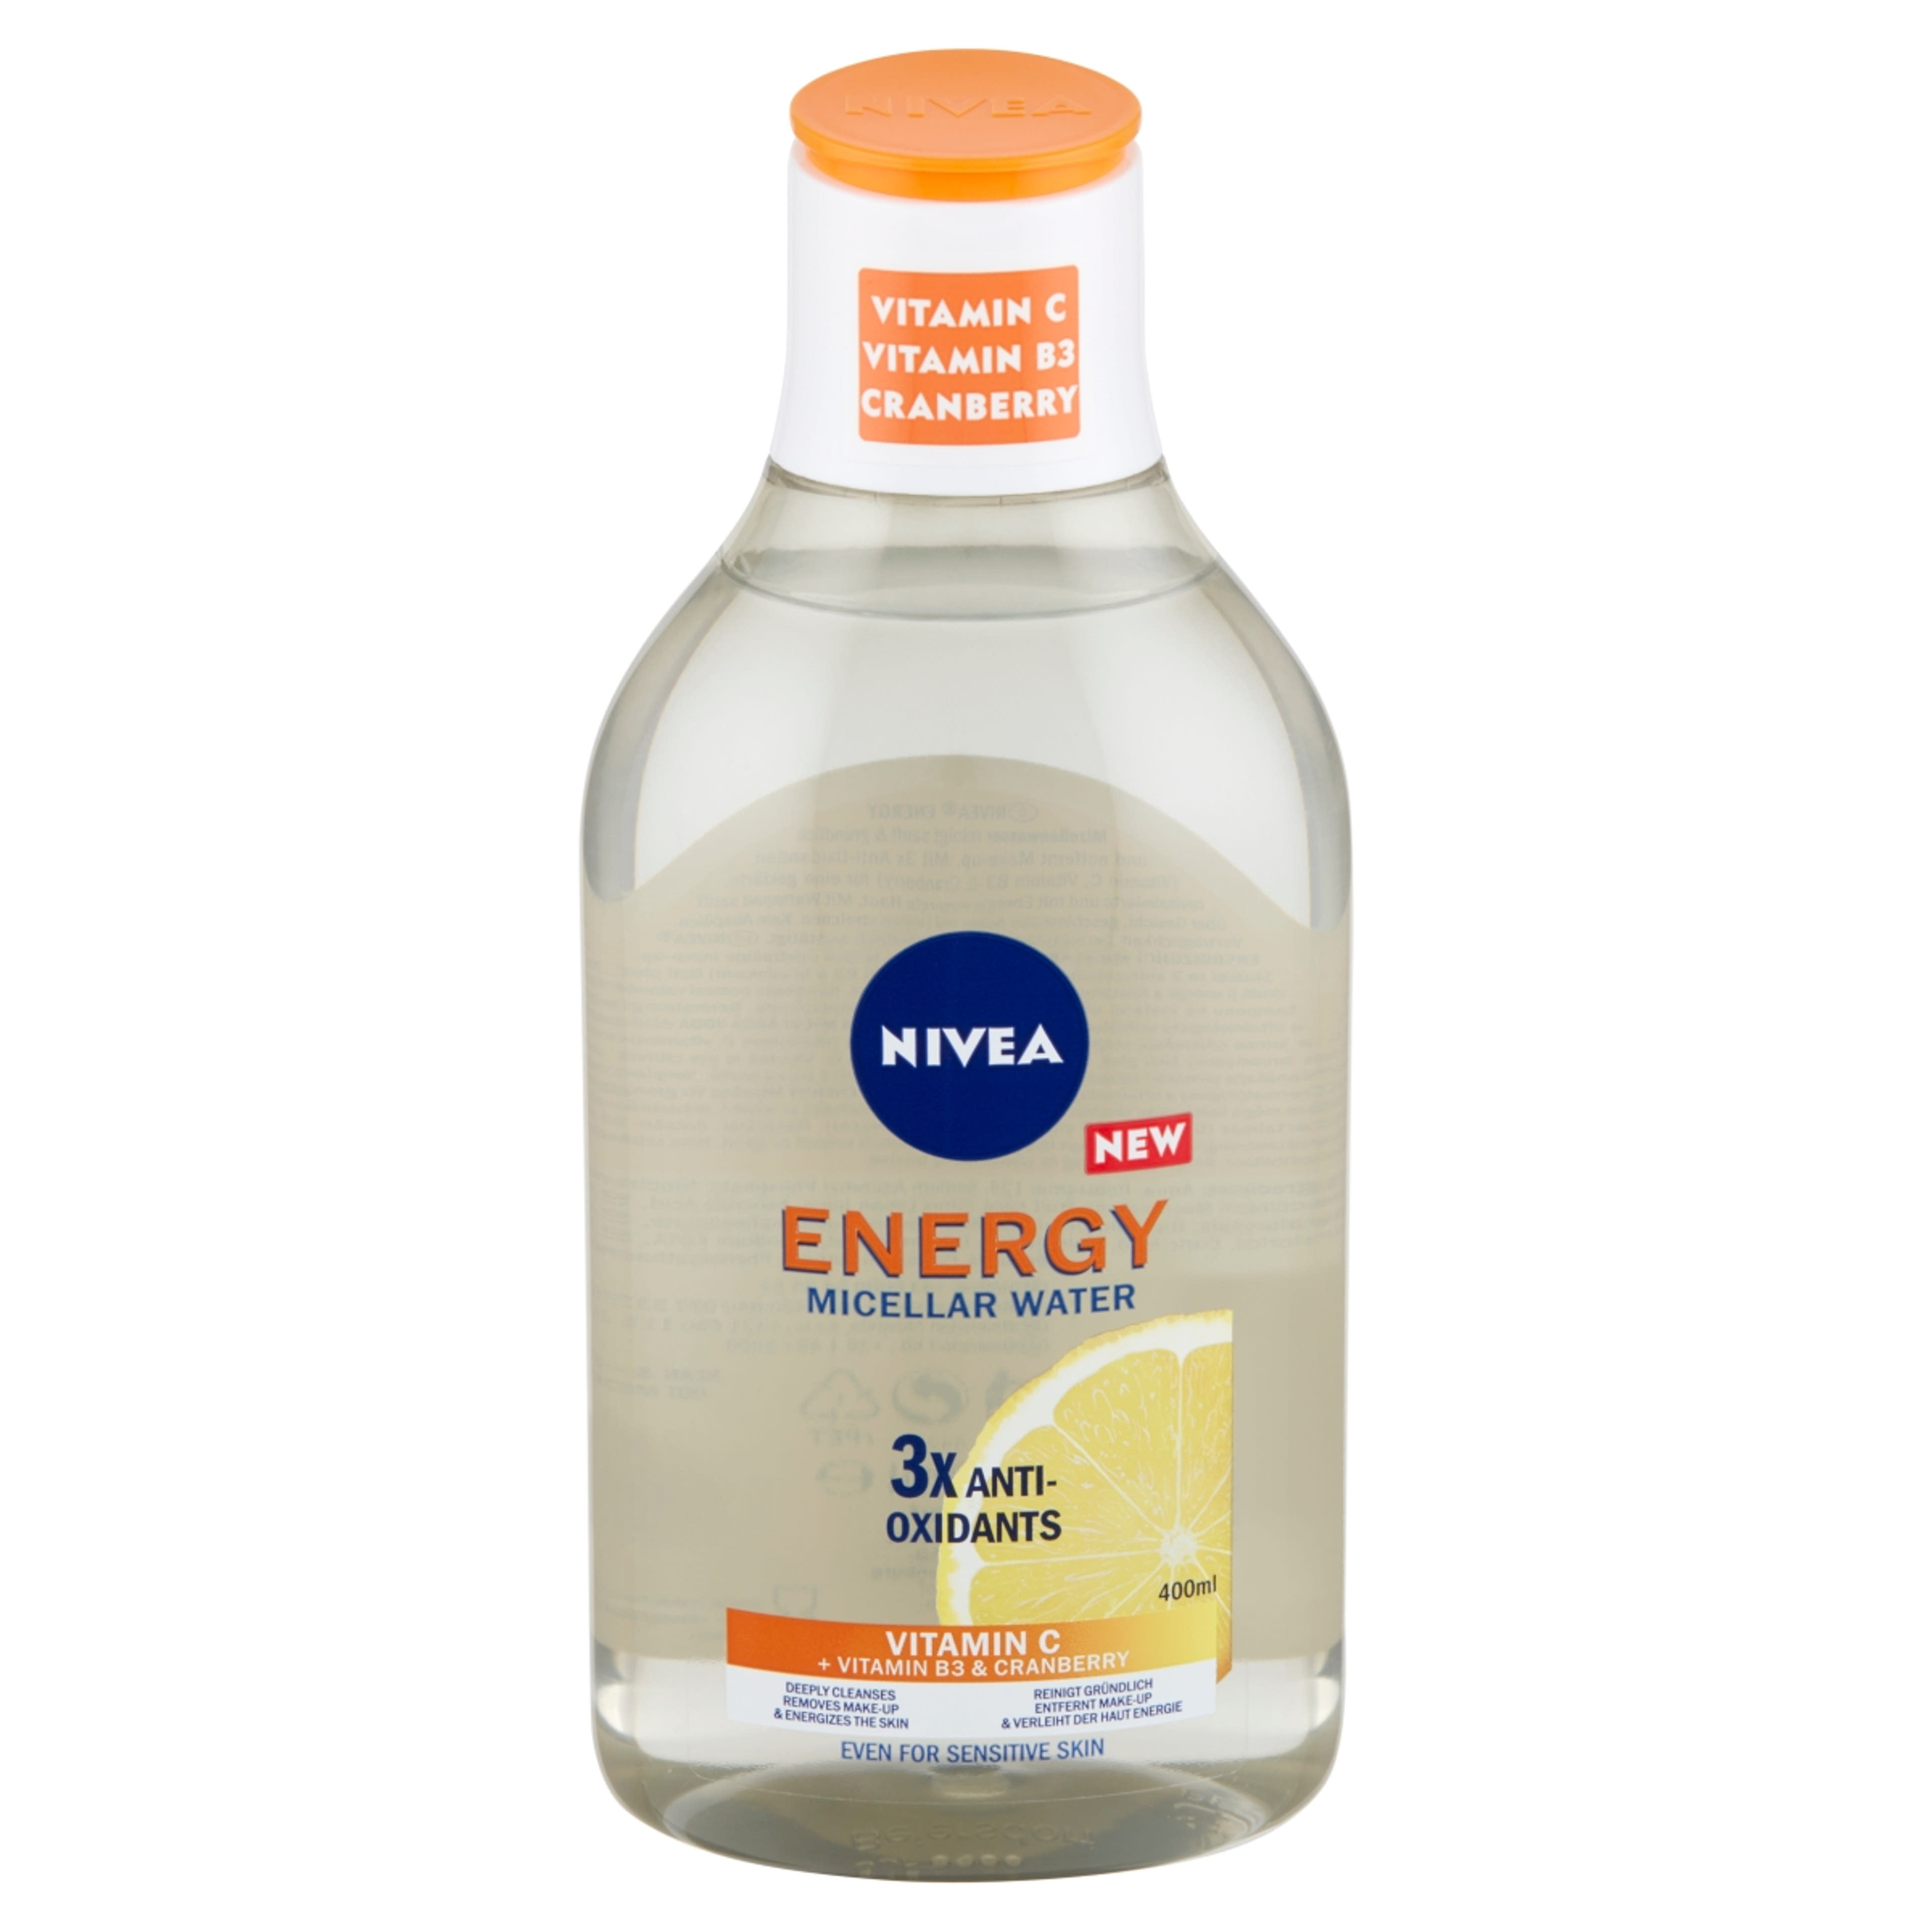 Nivea Energy micellás víz, c-vitaminnal - 400 ml-4